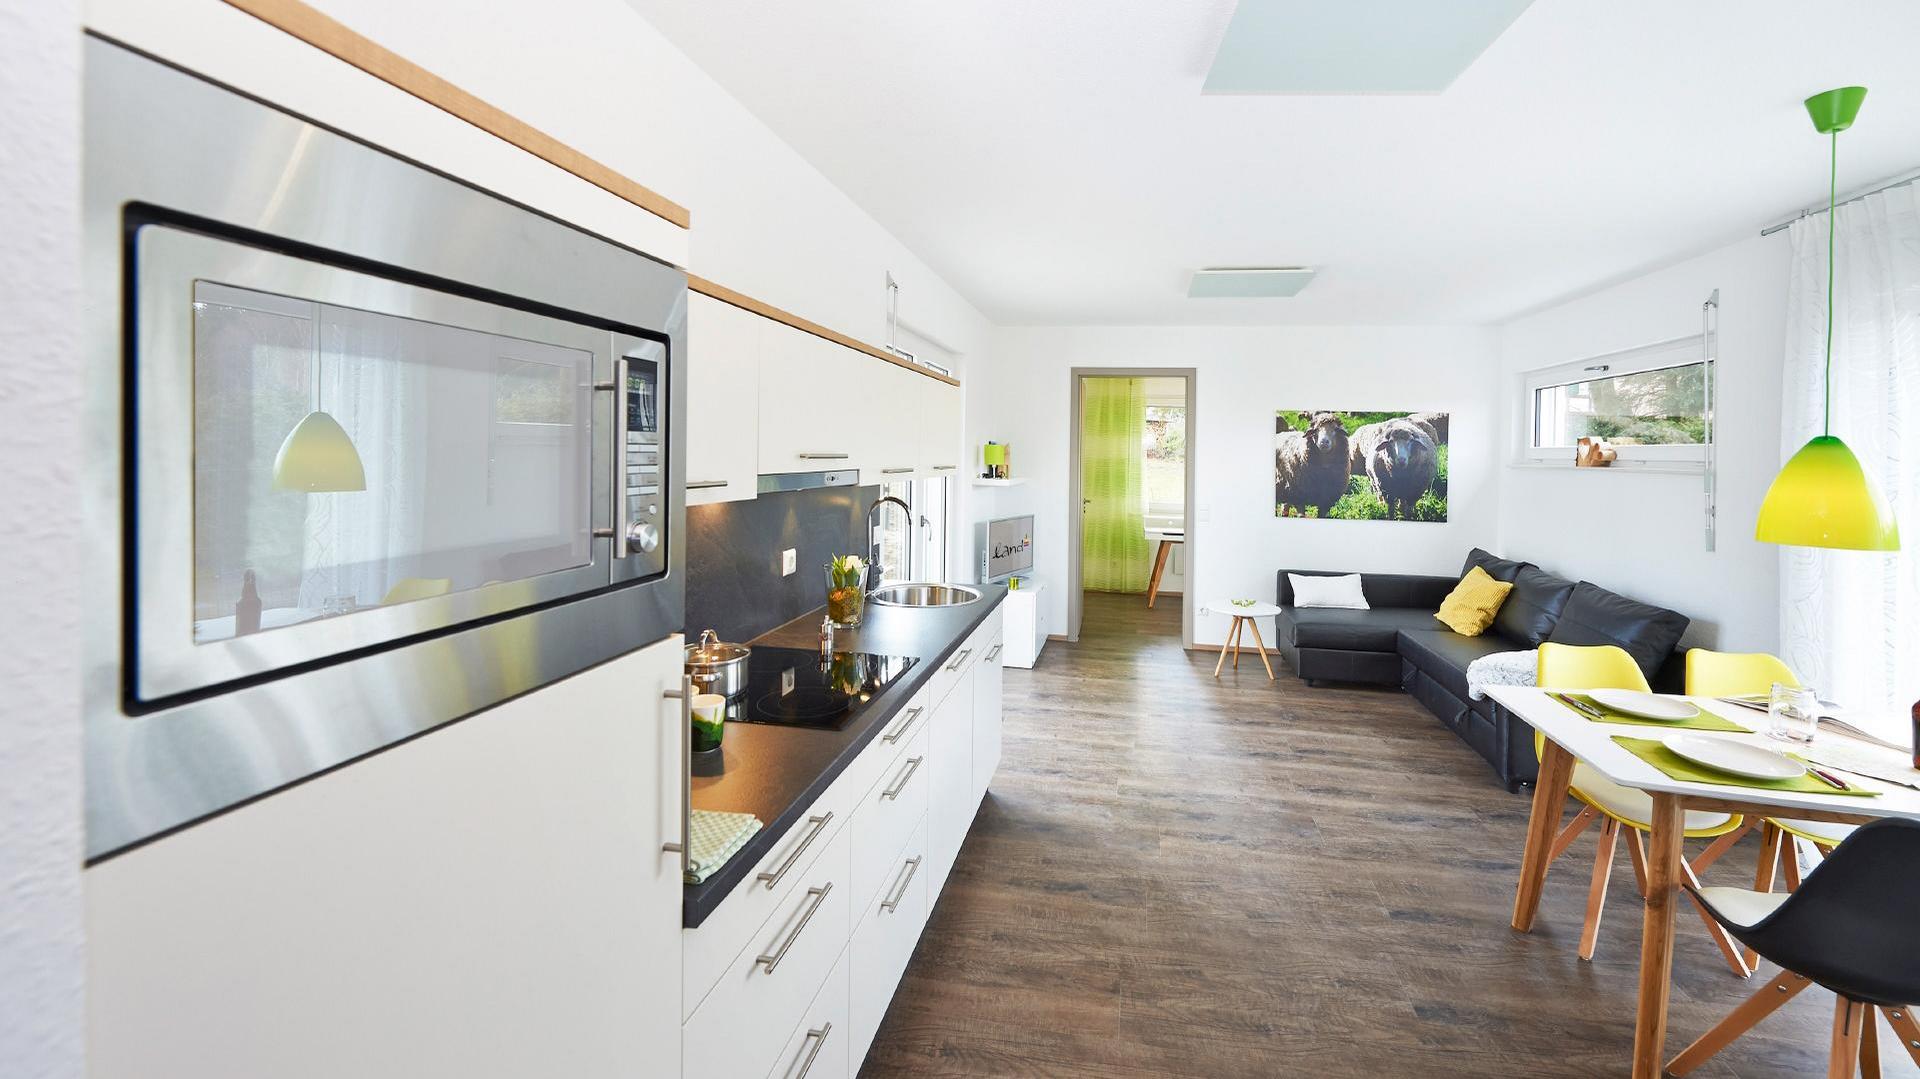 FlyingSpace Ferienhaus mit modernem Koch-, Ess- und Wohnbereich